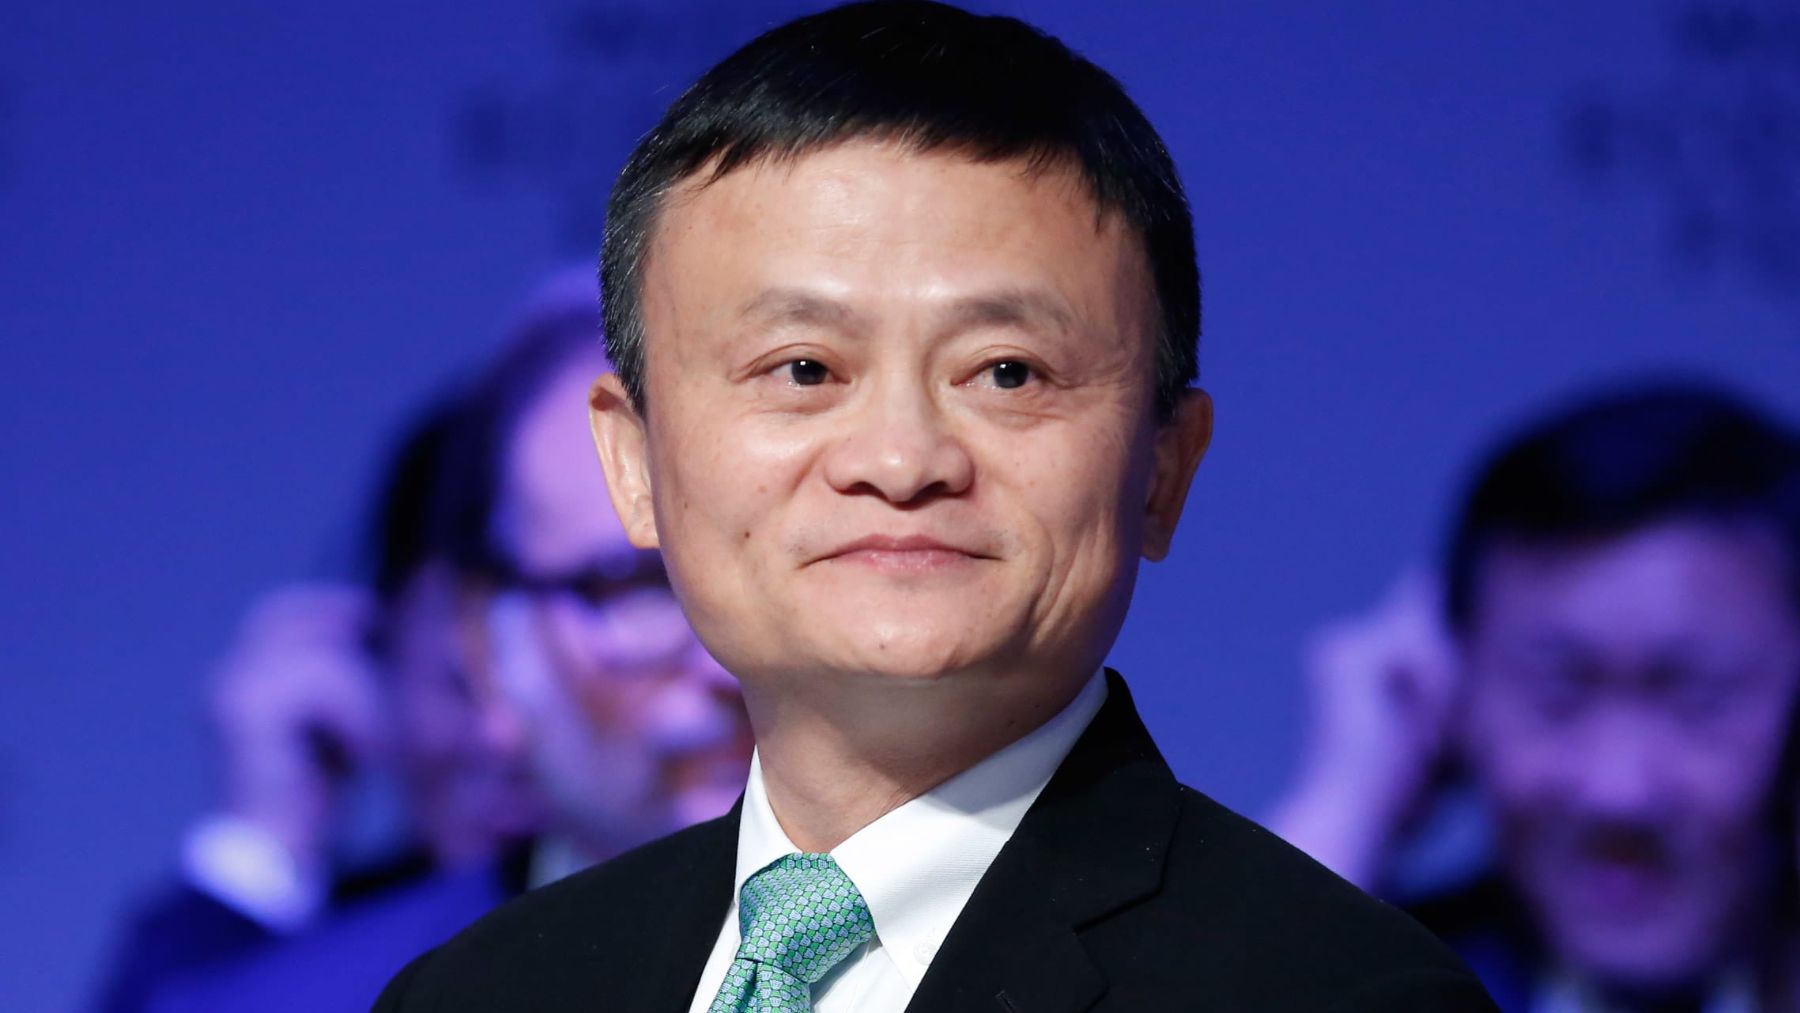 Jack Ma ha dado las claves frente a la pobreza / Foto: cnbc